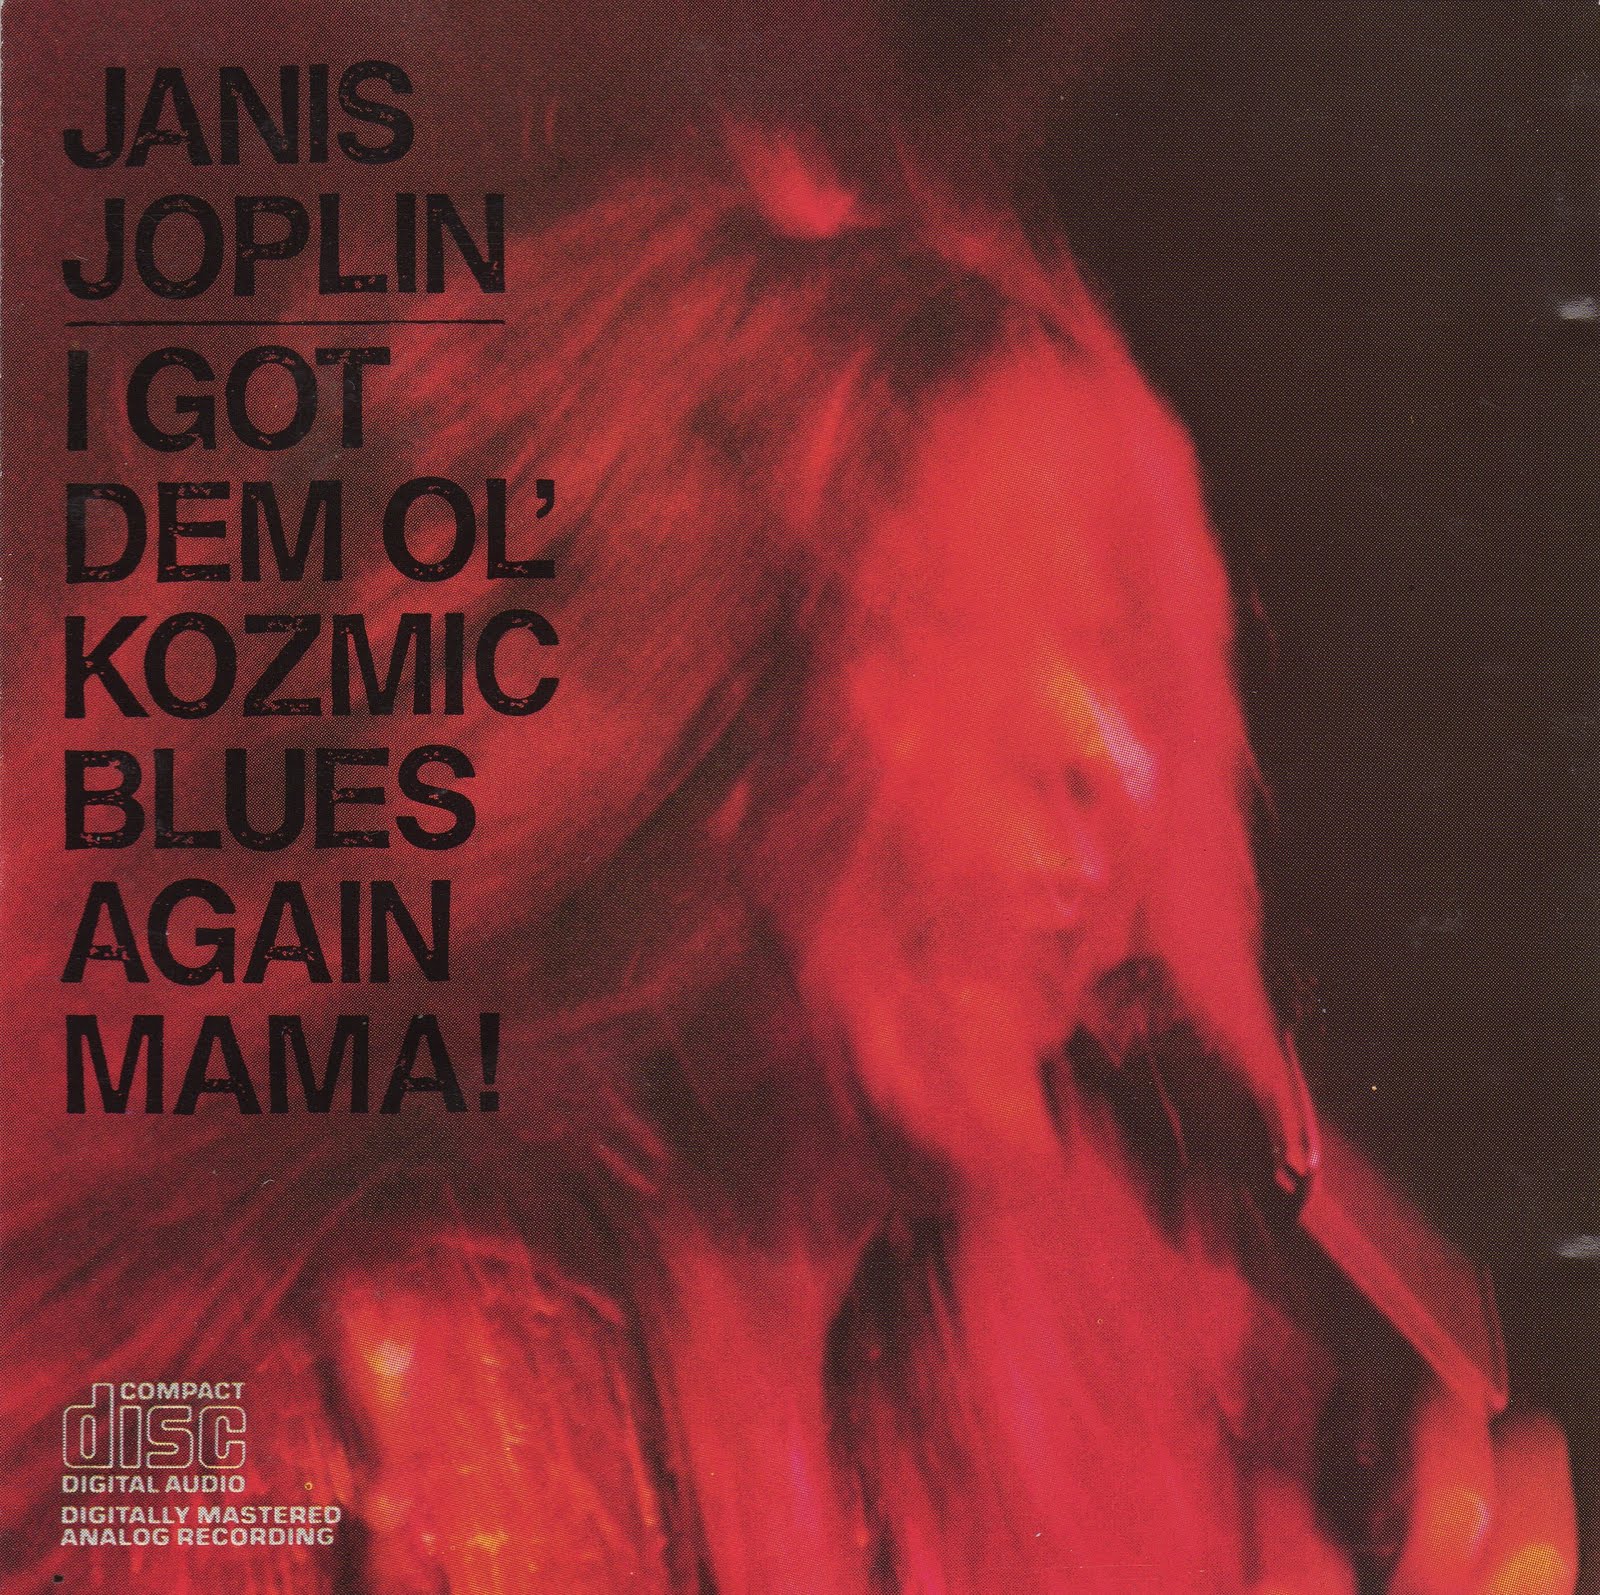 Blue again. I got dem ol' Kozmic Blues again mama! Дженис Джоплин. I got dem ol' Kozmic Blues again mama! (1969). Janis Joplin Kozmic Blues. Дженис Joplin CD.